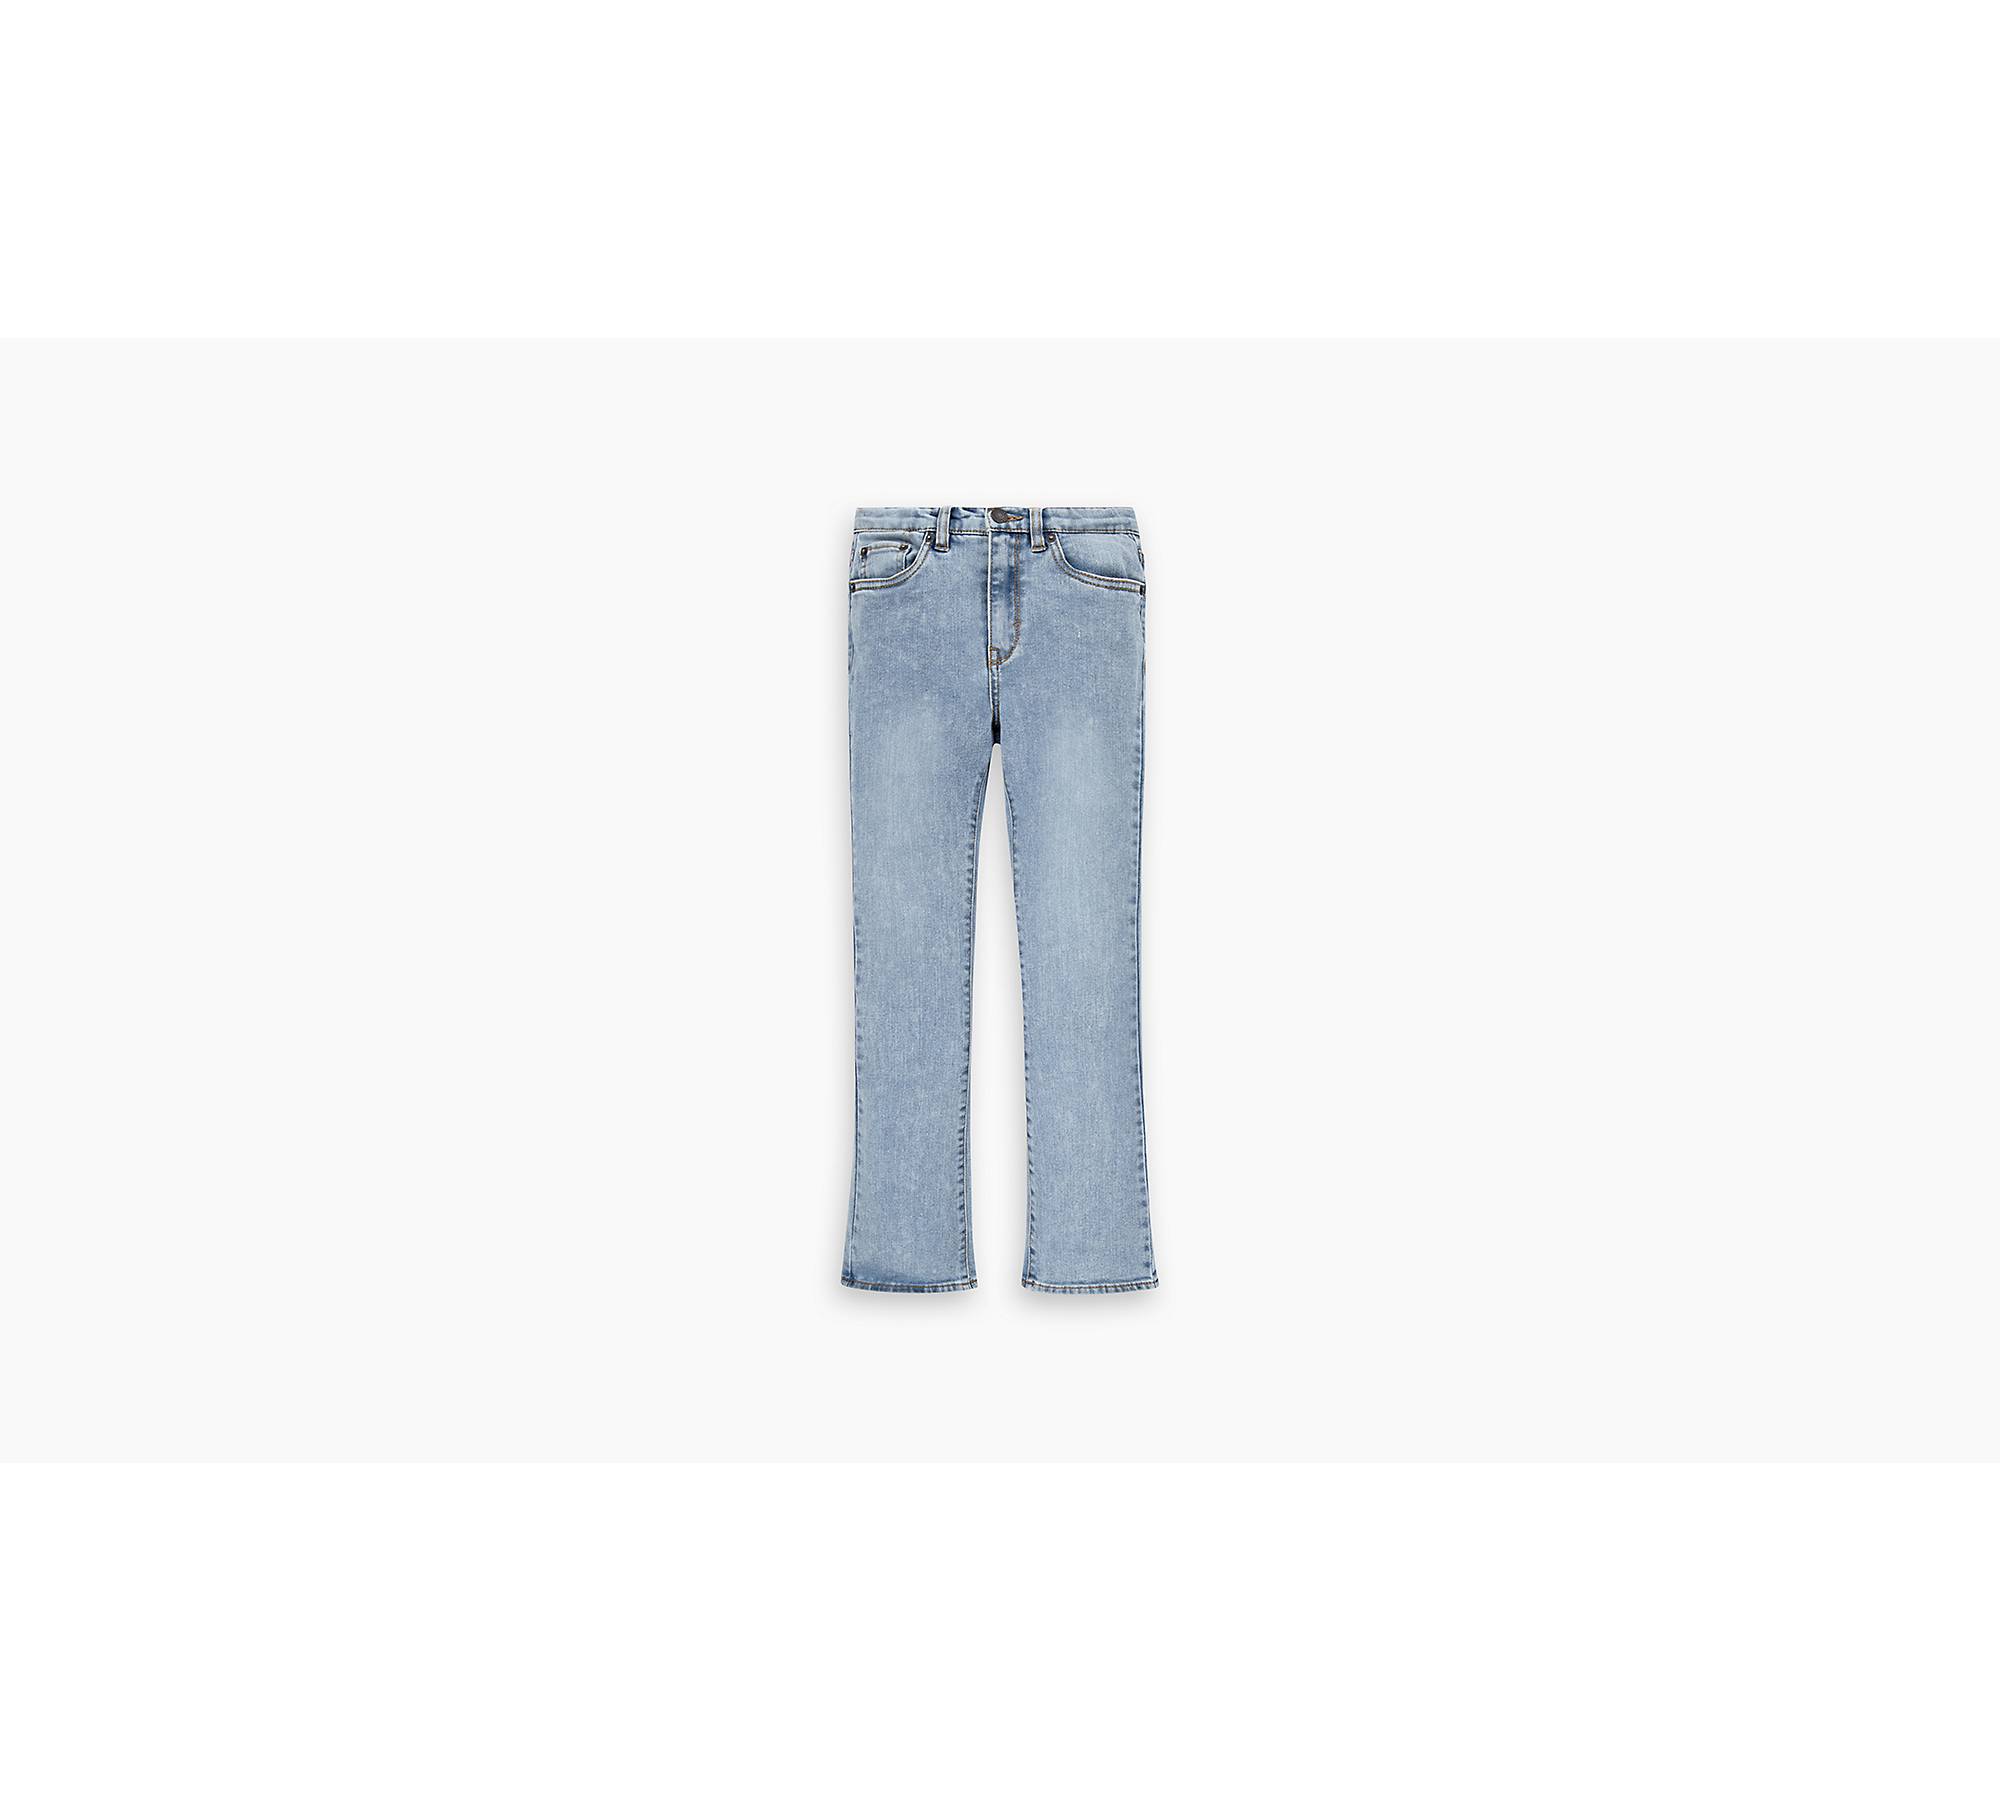 Jeans Acampanados De Talle Alto 726™ - Azul